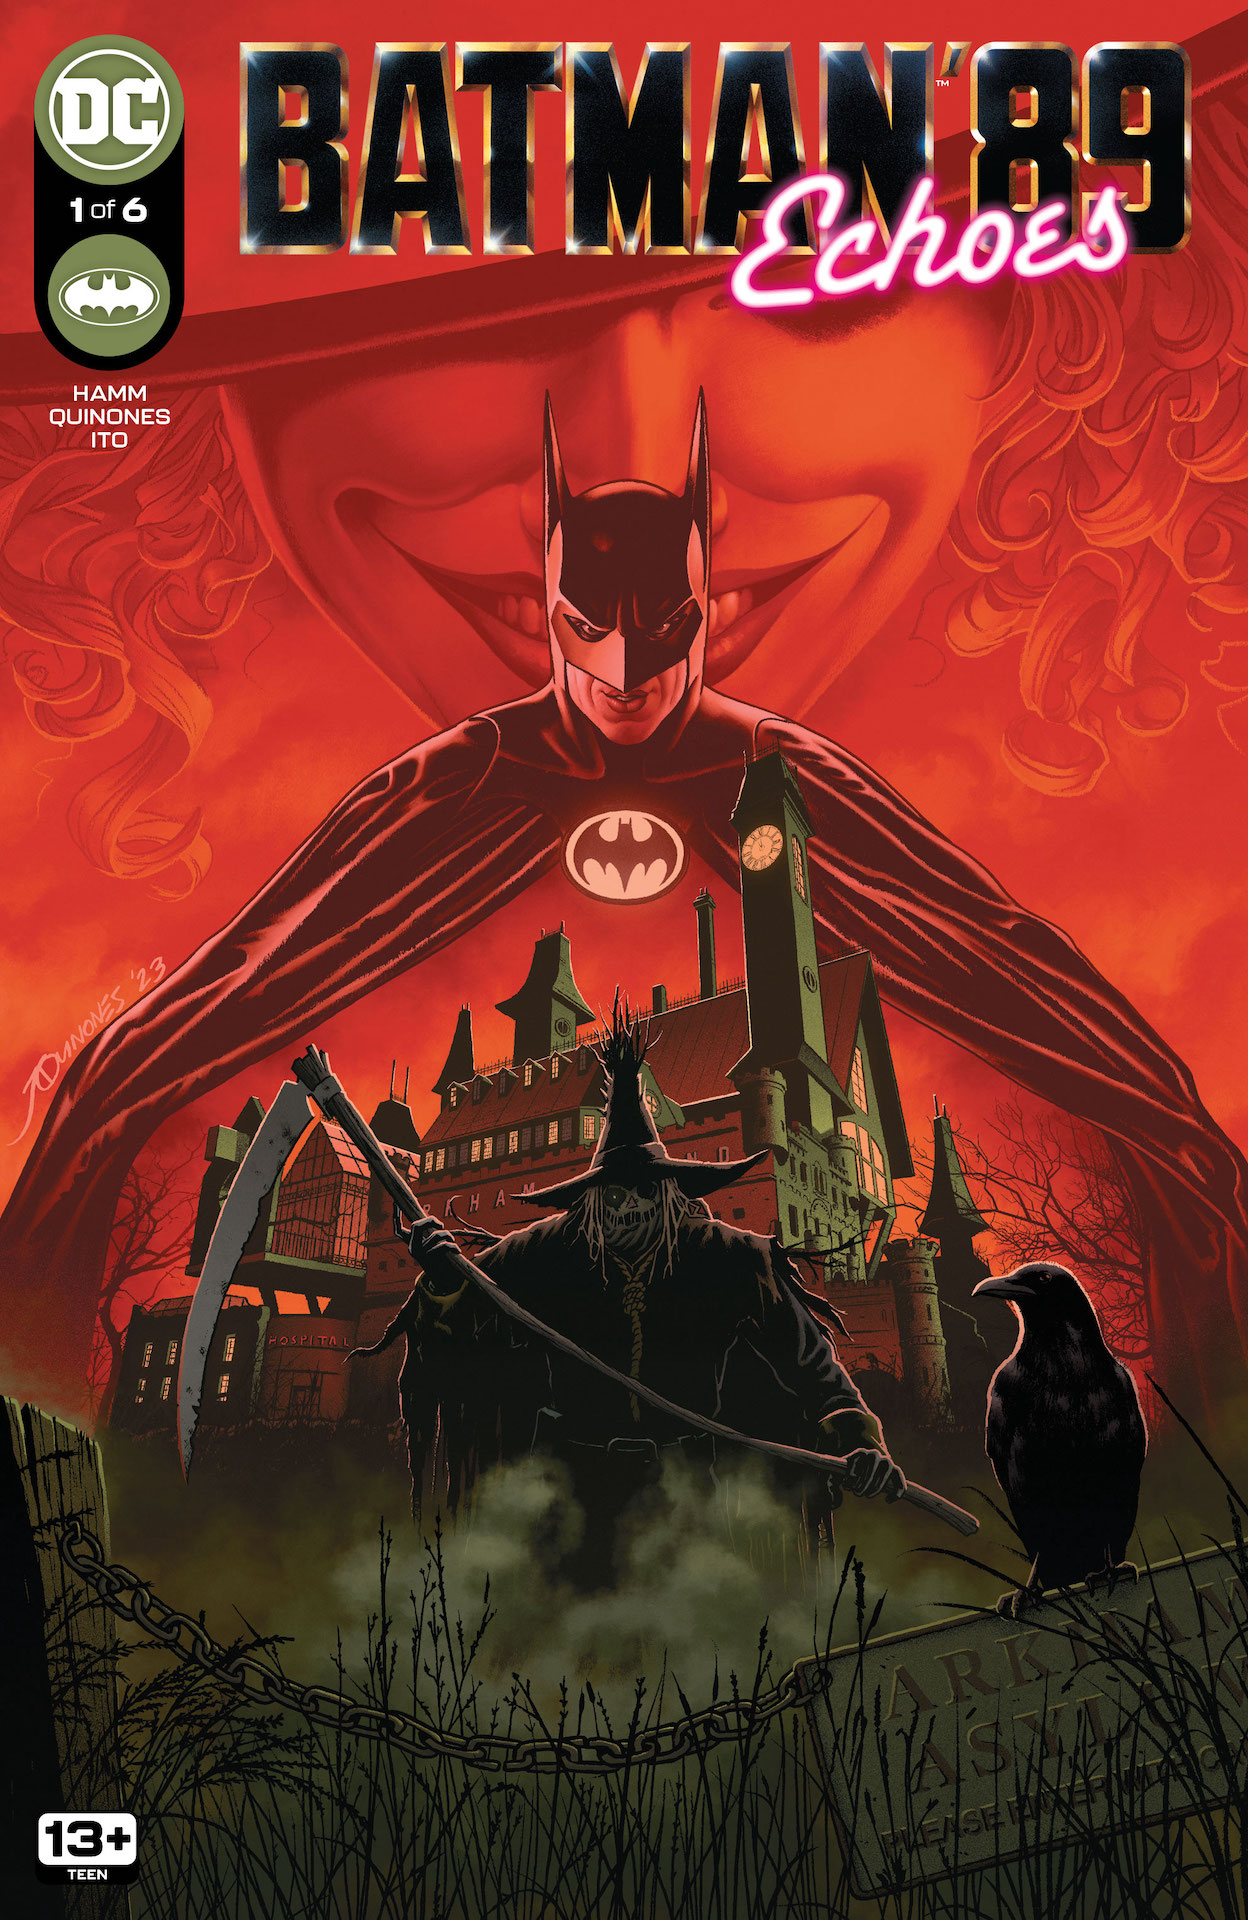 DC Preview: Batman '89: Echoes #1